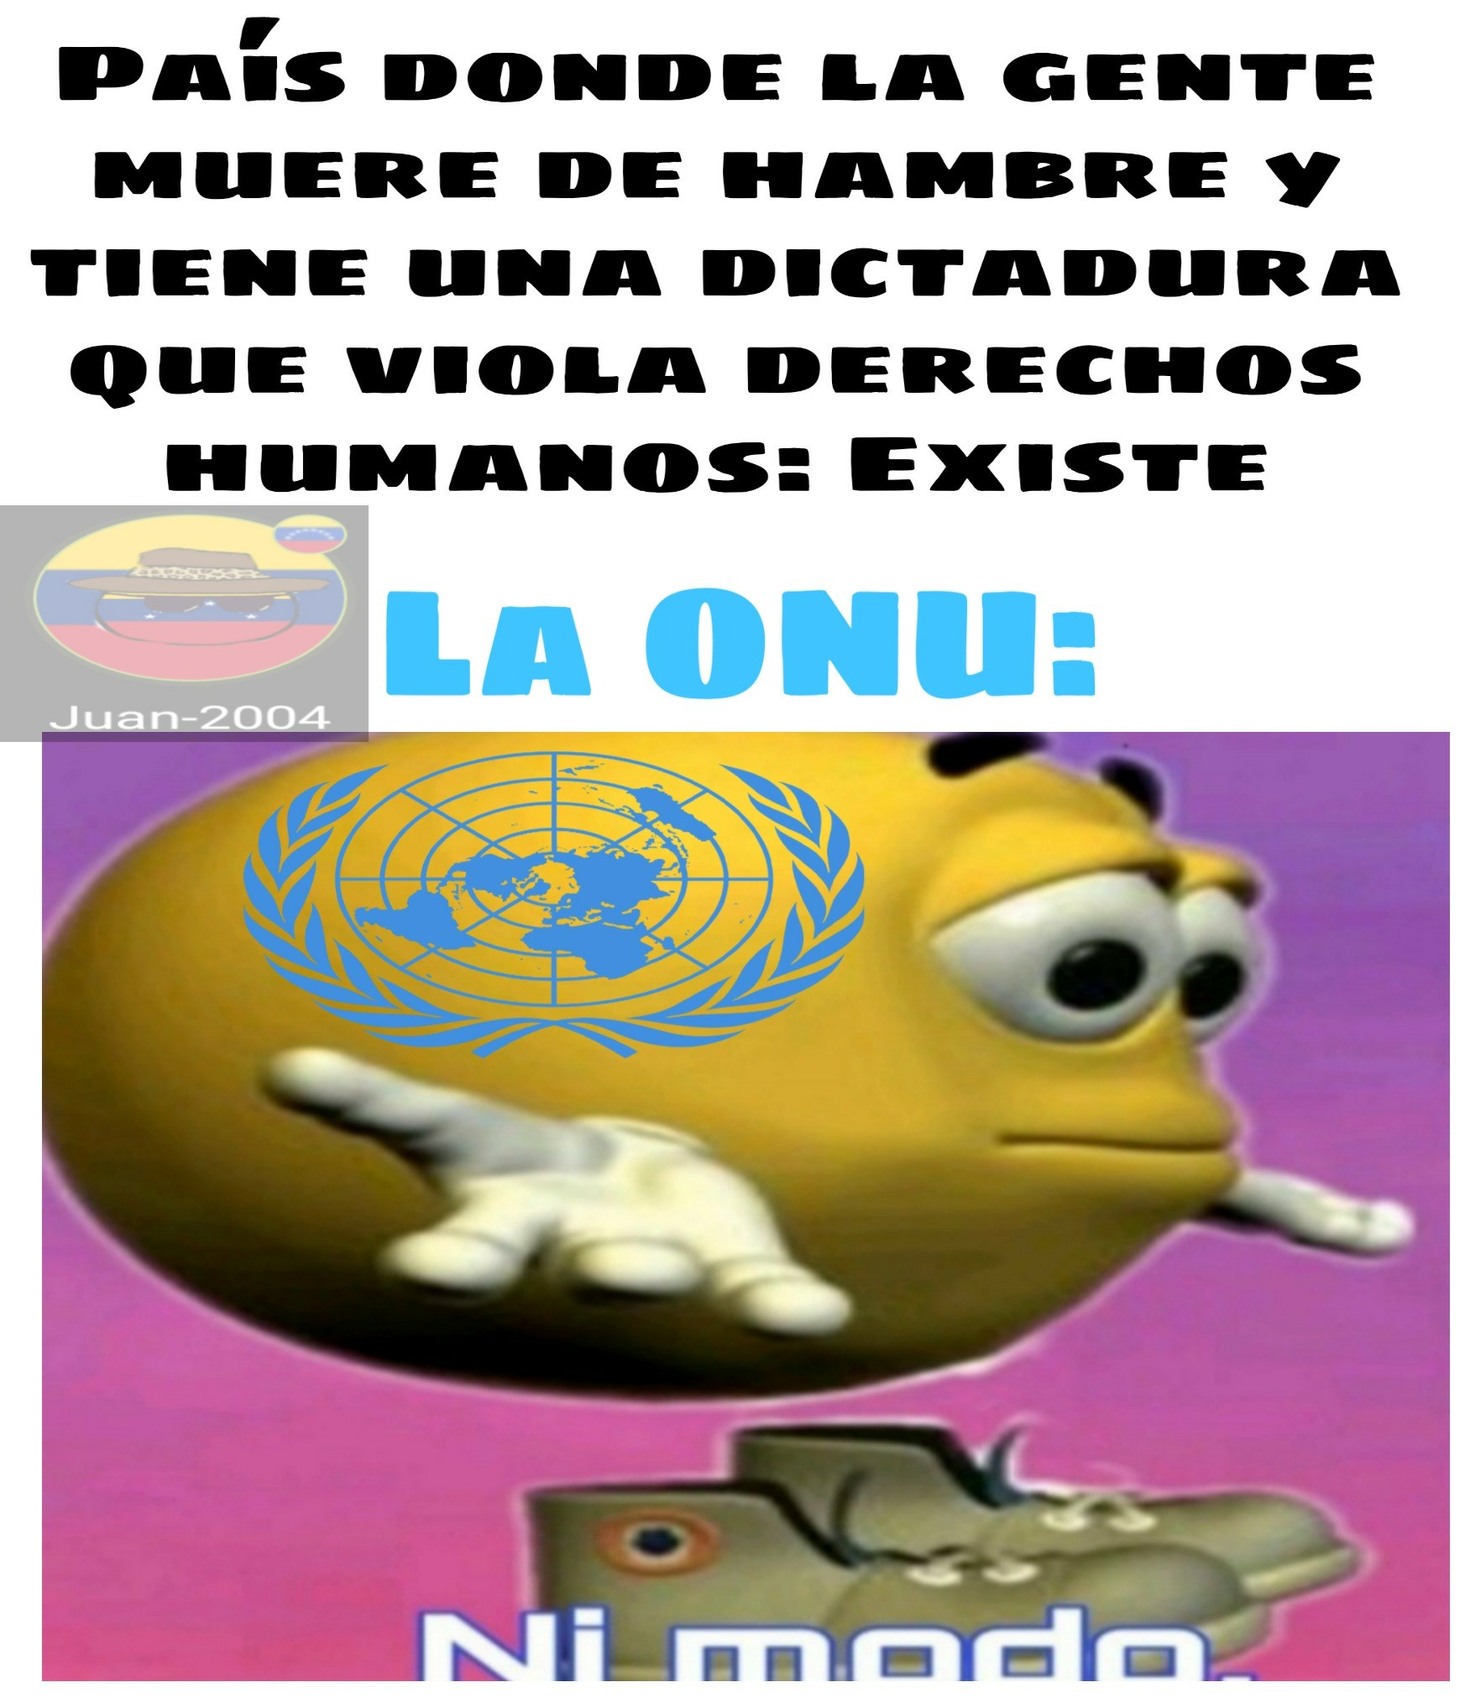 La ONU sirve de la misma manera que los pezones masculinos - meme